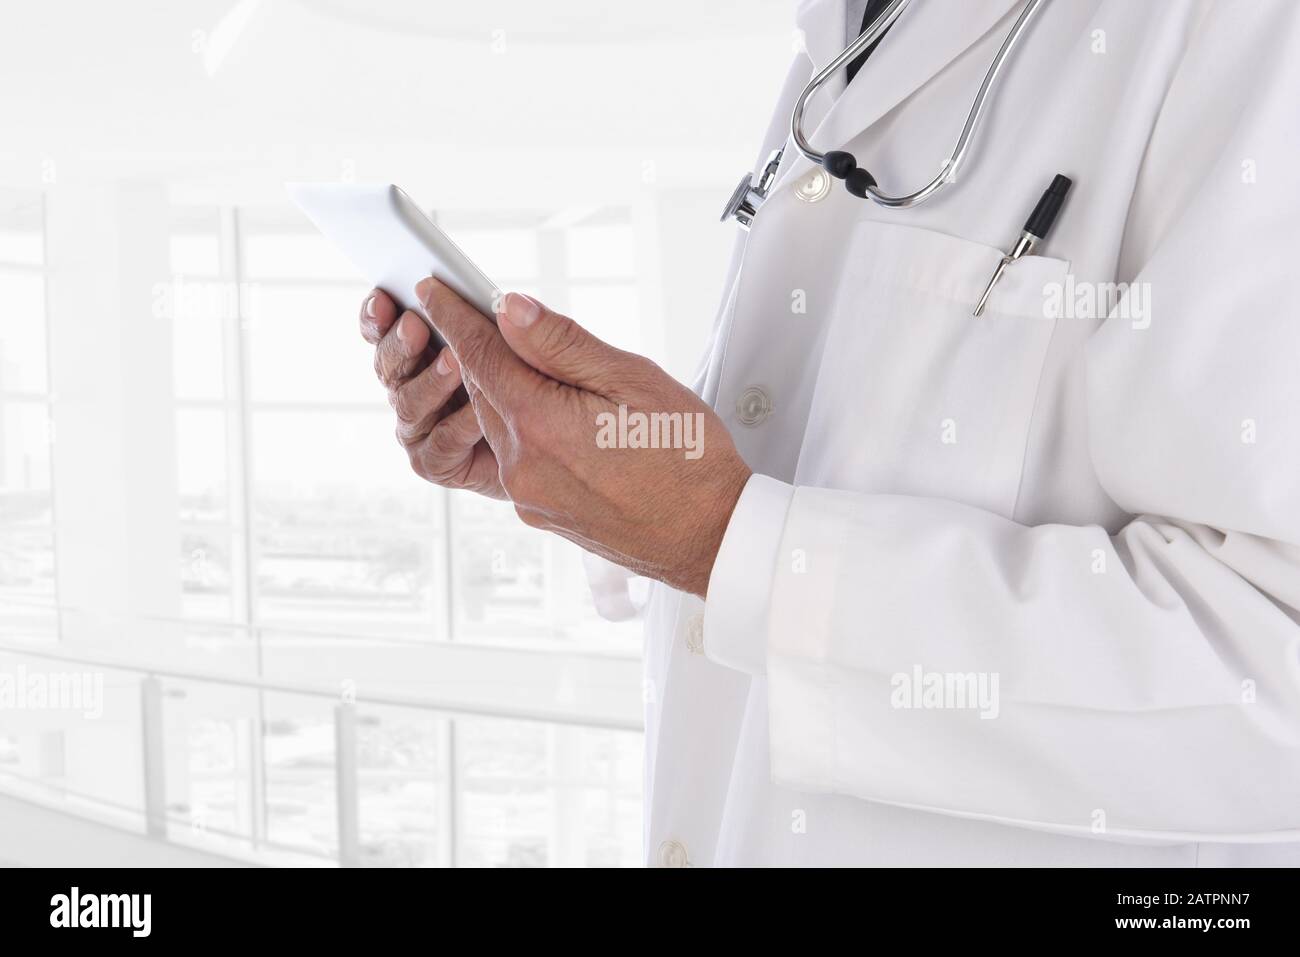 Nahaufnahme eines Arztes mit einem Tablet-Computer mit einer modernen medizinischen Einrichtung mit hohem Schlüssel. Der Mensch ist nicht erkennbar. Stockfoto